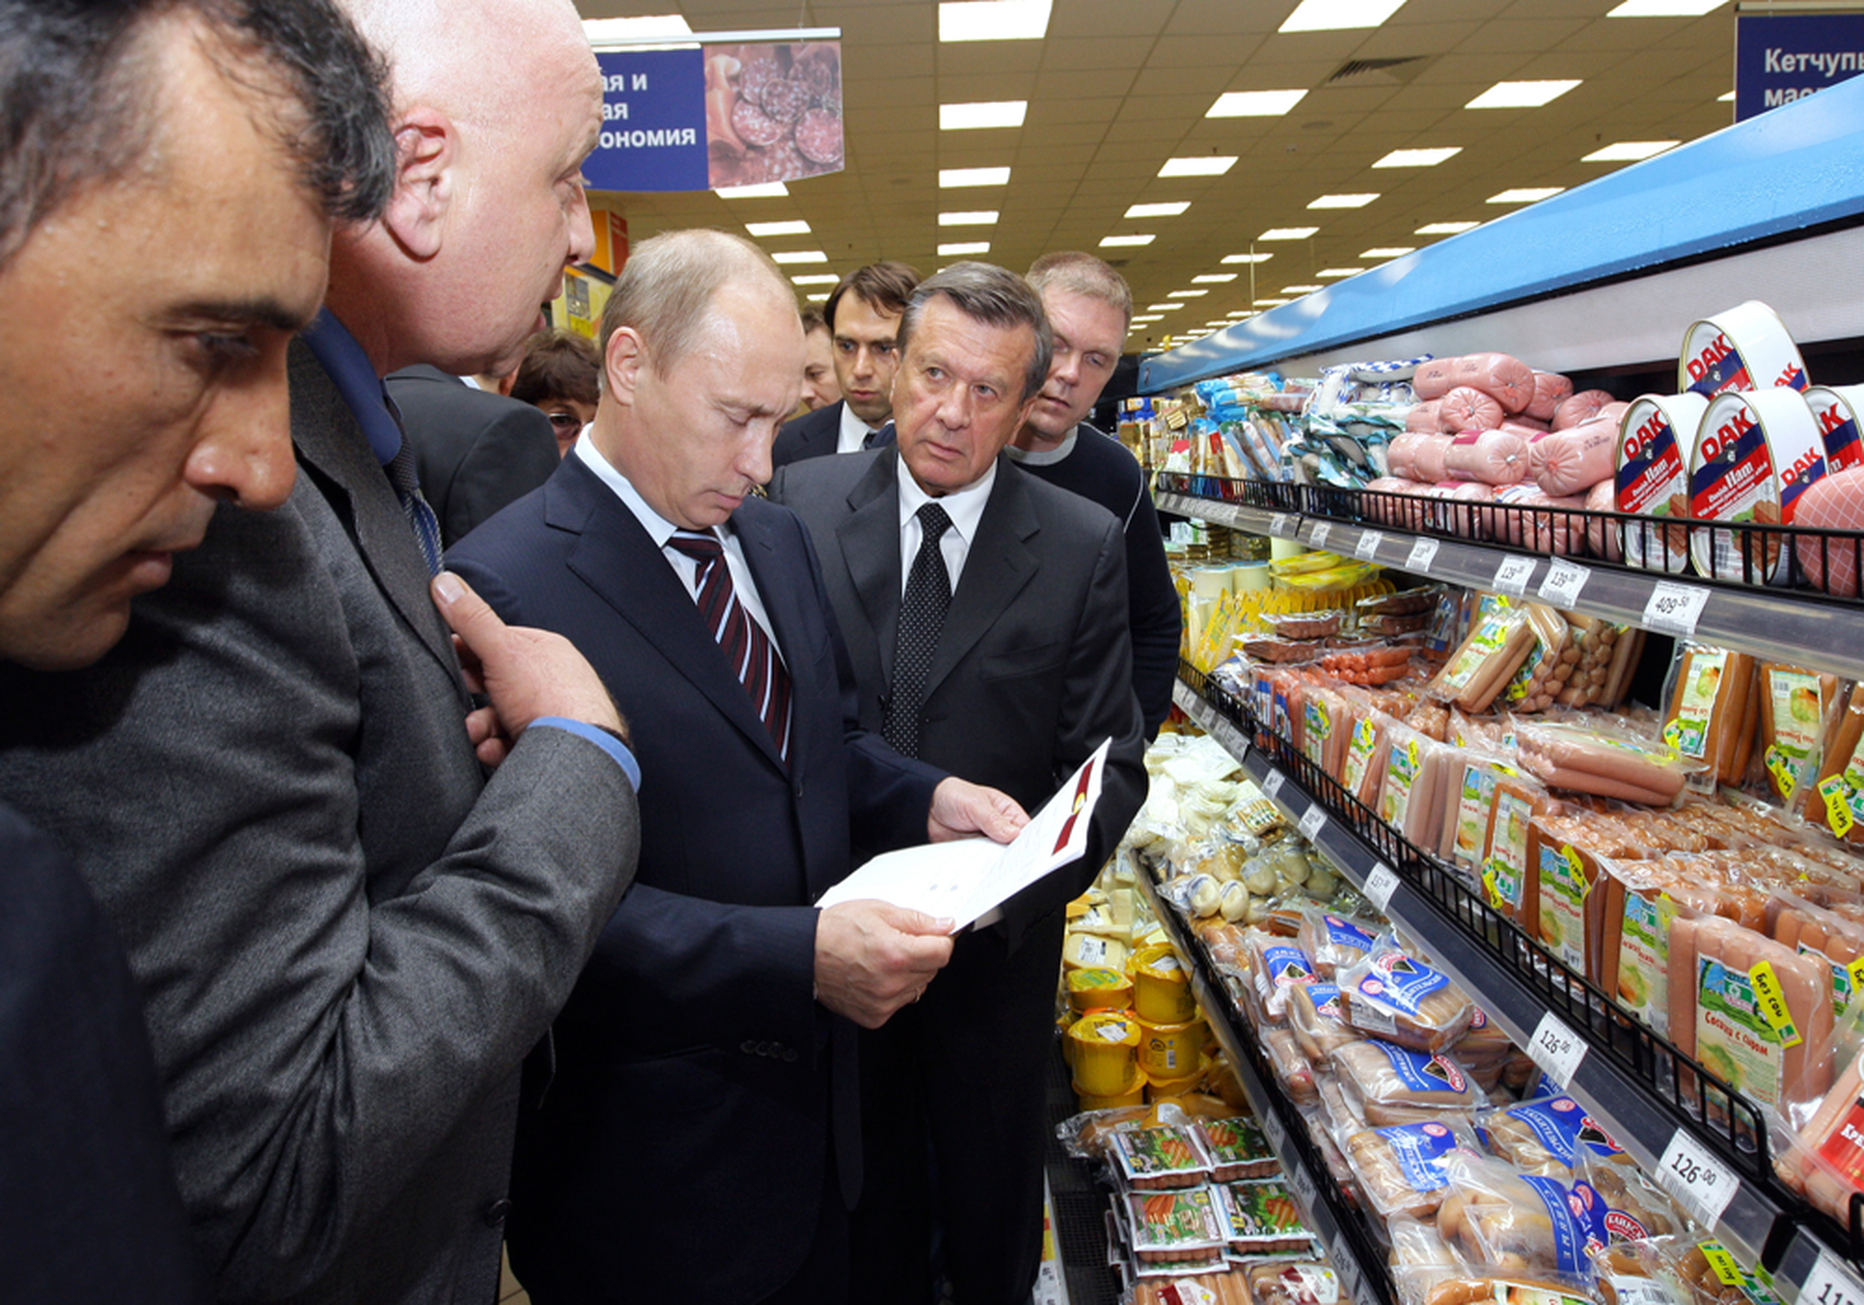 Кремль рассчитывает ужесточением мер удержать цены под контролем – в 2009 году Владимир Путин, тогда бывший российским премьером, уже пытался контролировать цены, самолично посещая московские магазины.